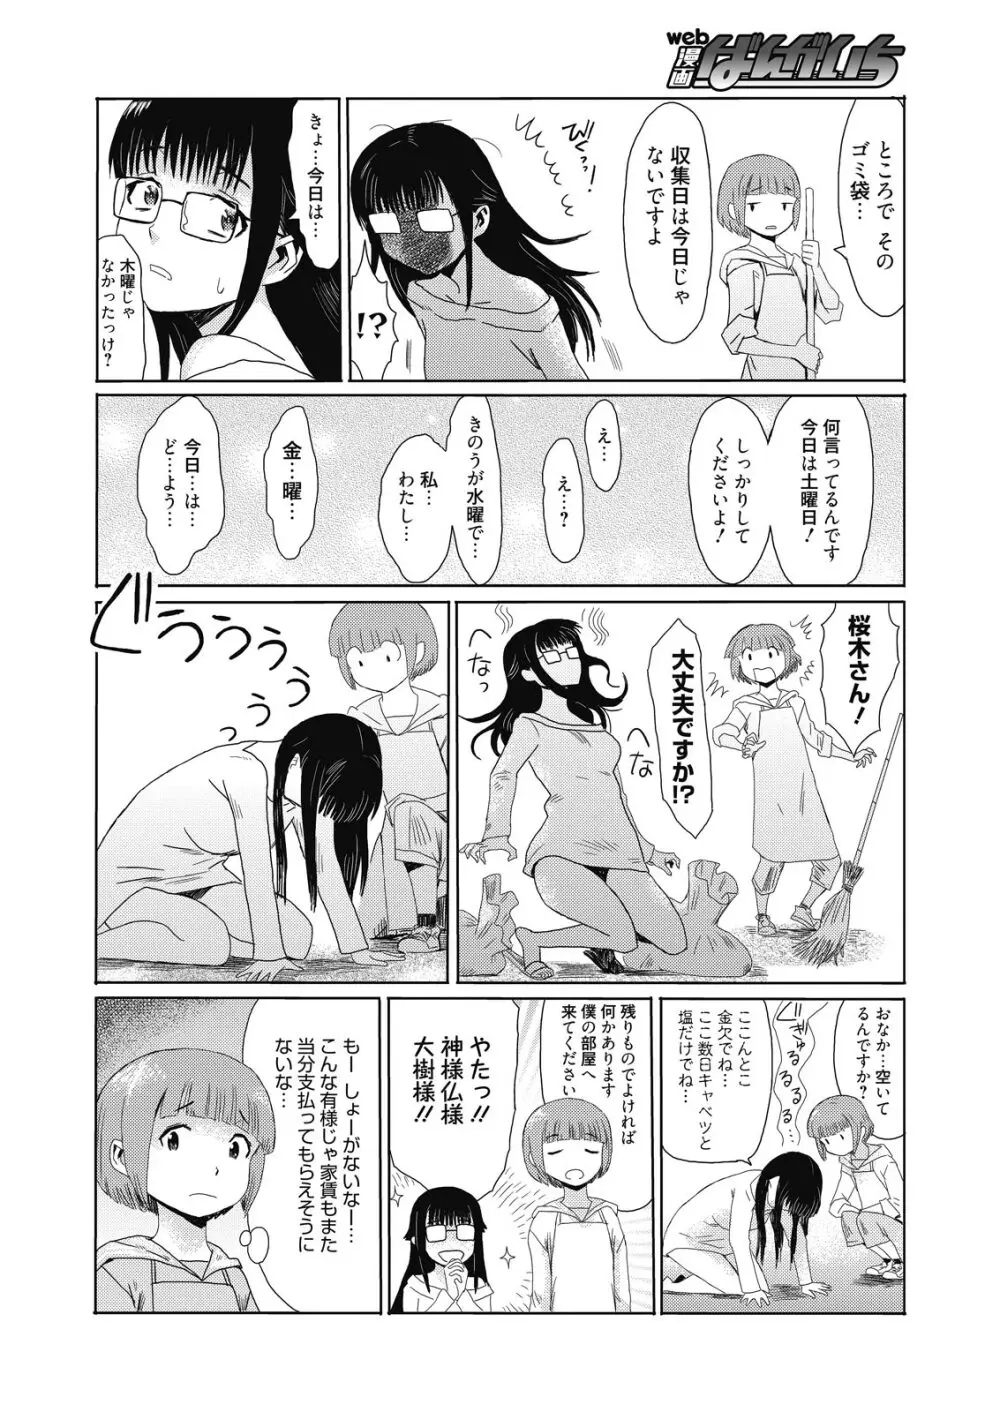 web 漫画ばんがいち Vol.8 4ページ